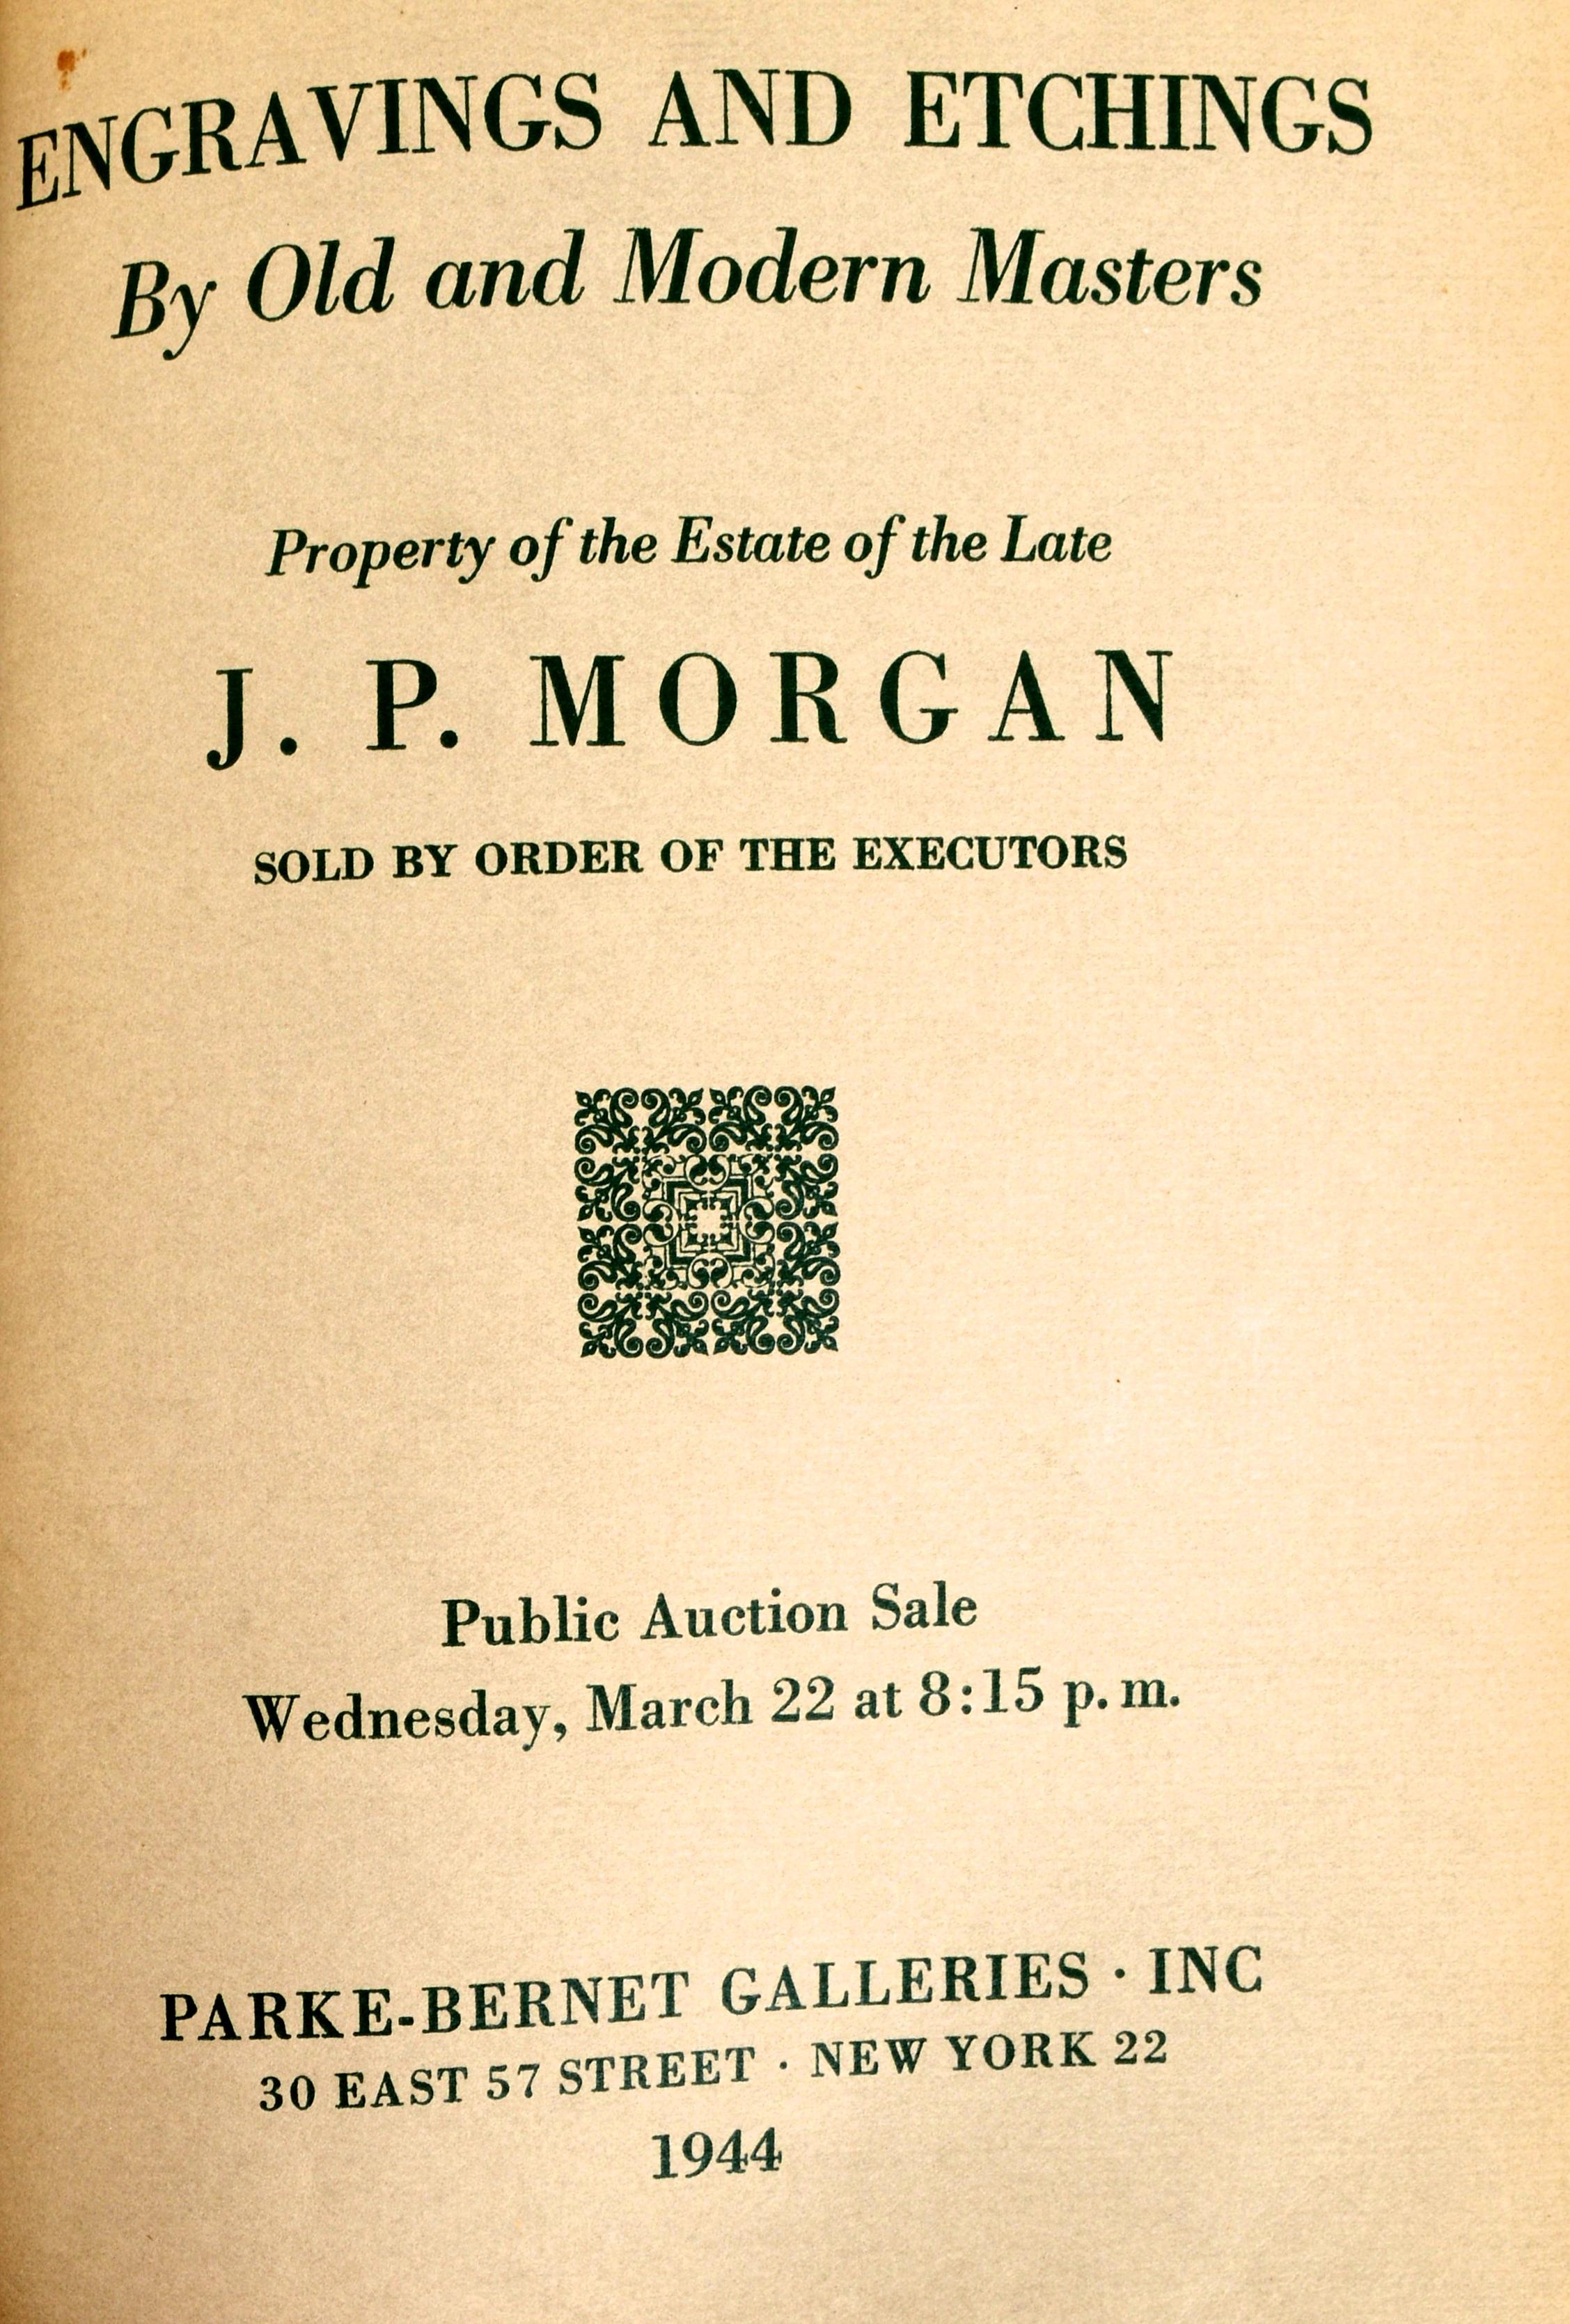 Eigentum Der Nachlass des verstorbenen J.P. Morgan, kompletter Katalog-Set aus dem Jahr 1944 (Mitte des 20. Jahrhunderts)